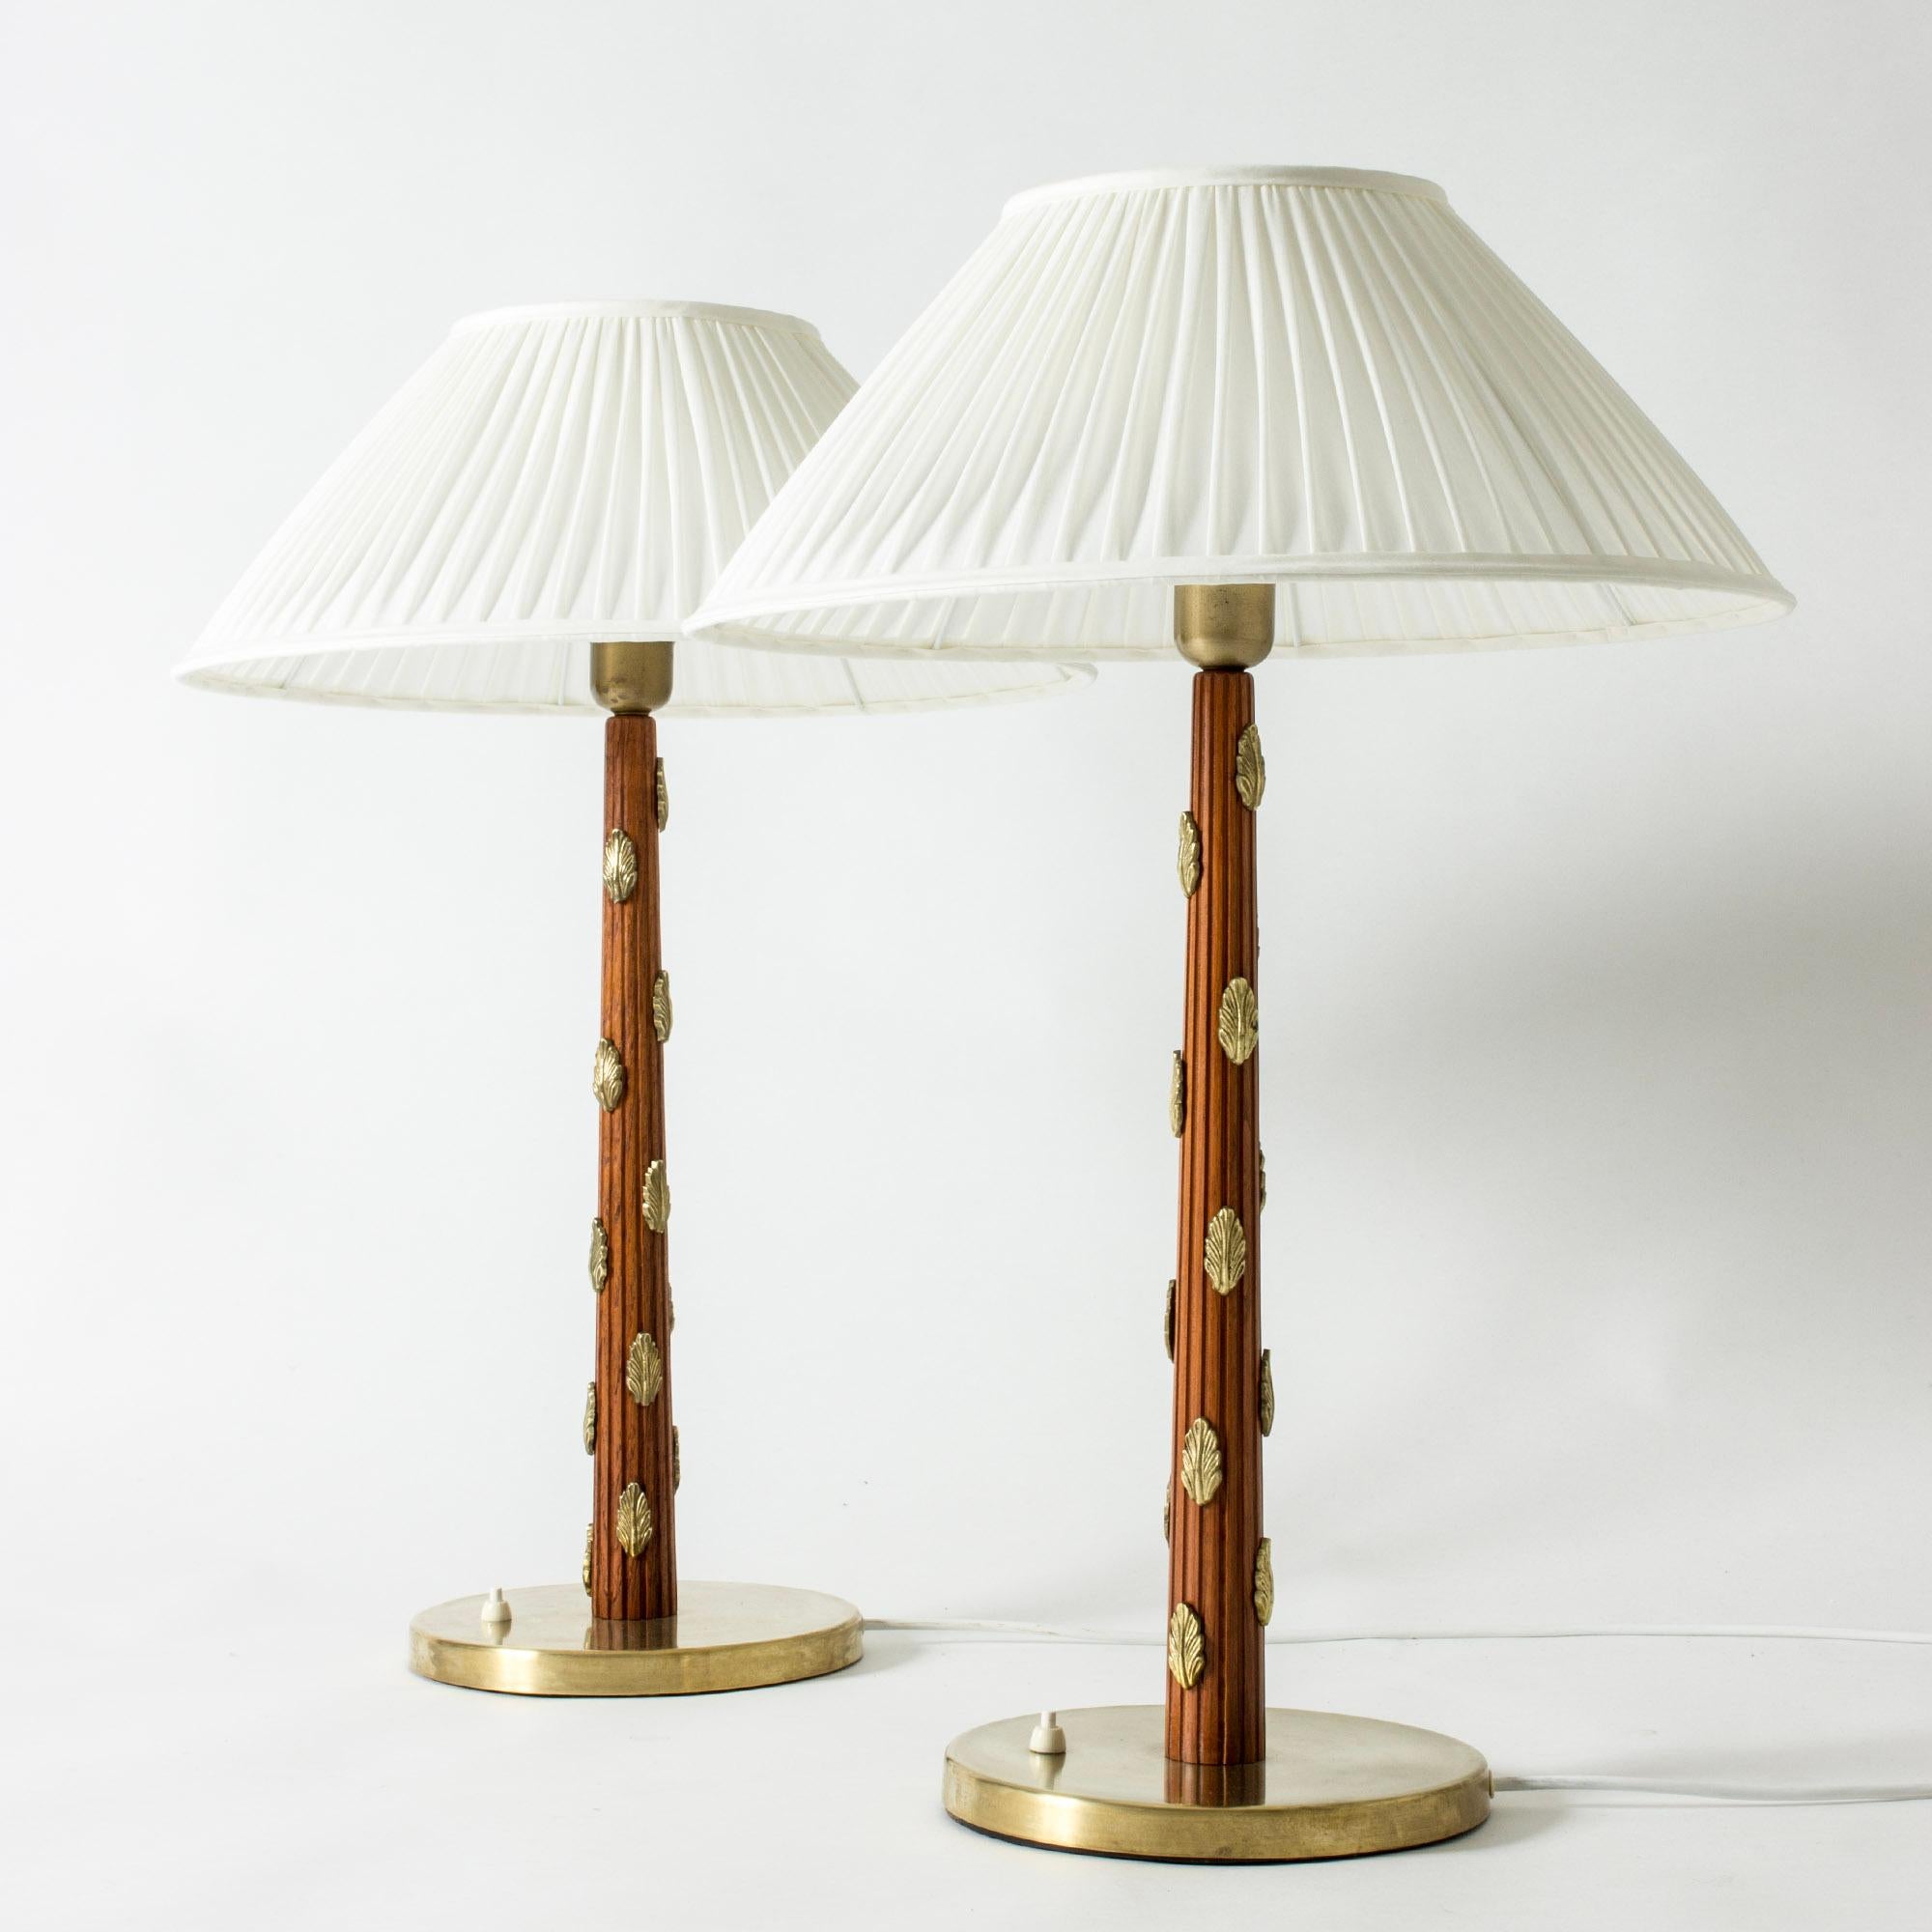 Paire d'étonnantes lampes de table surdimensionnées par Hans Bergström, fabriquées à la fin des années 1930. Tiges en acajou gaufrées avec des rayures et décorées de belles feuilles appliquées en laiton. Ombres plissées.

Hans Bergström était le